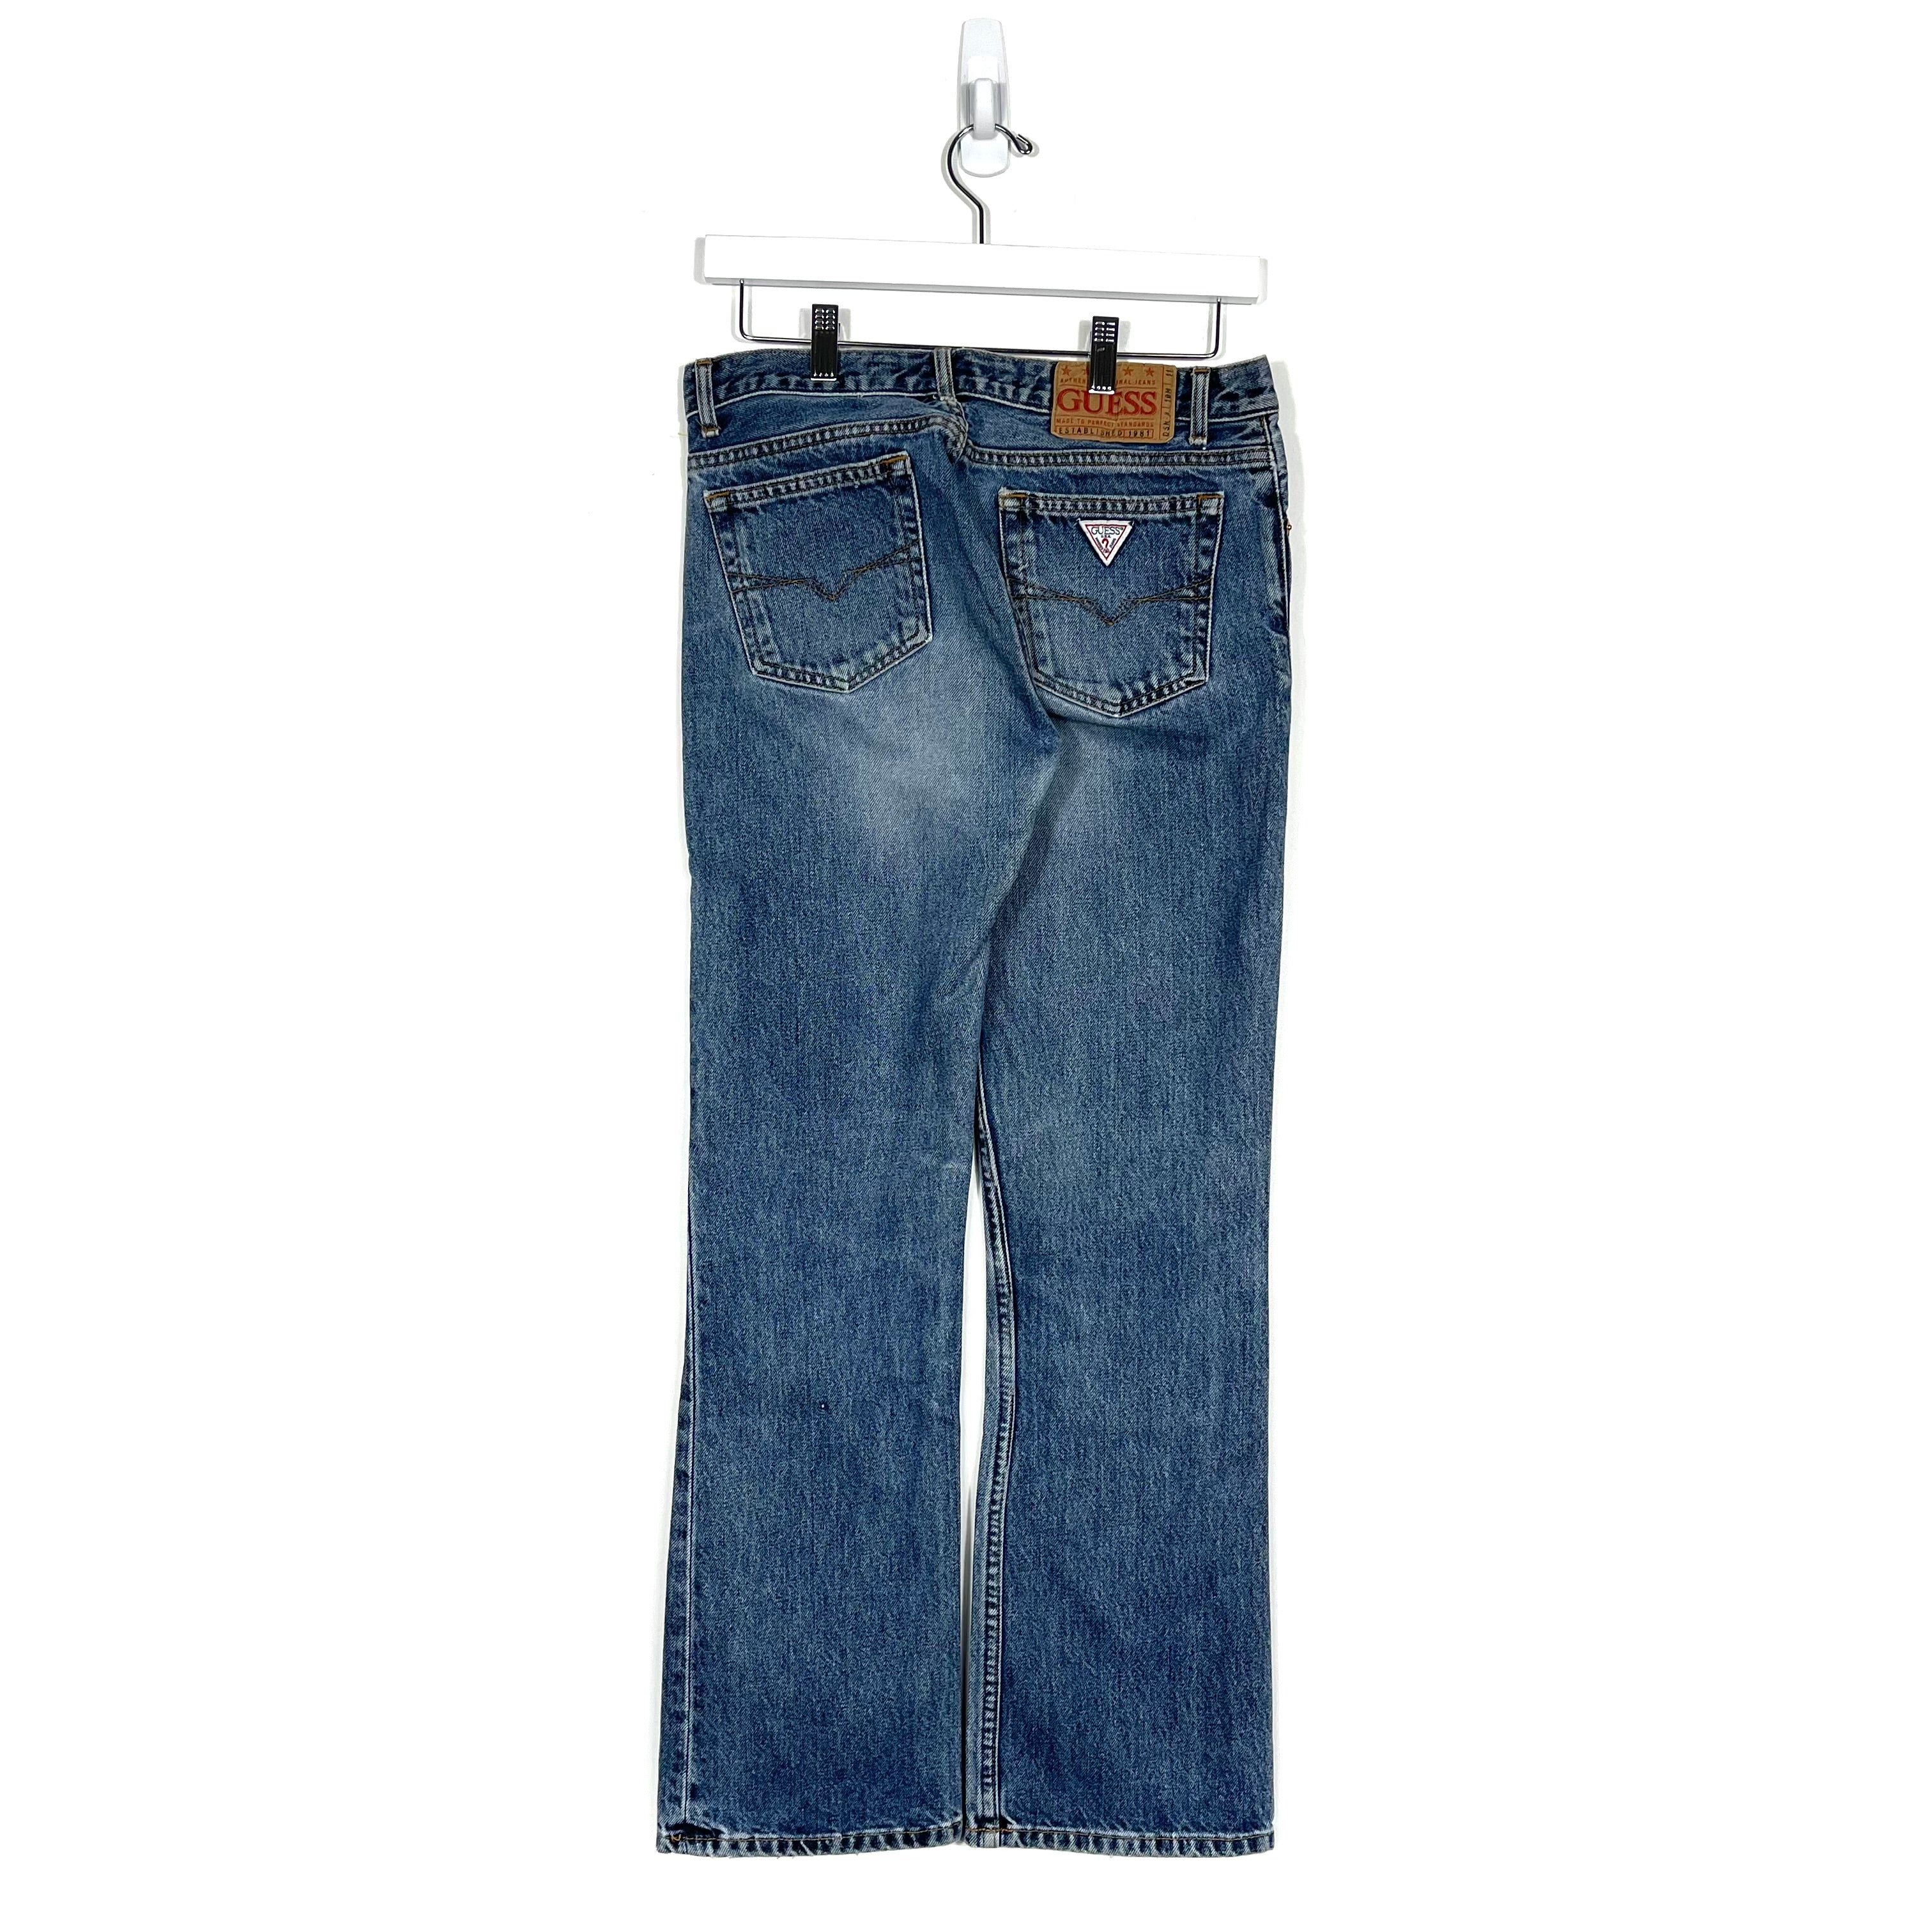 Vintage Guess Jeans - 28/30